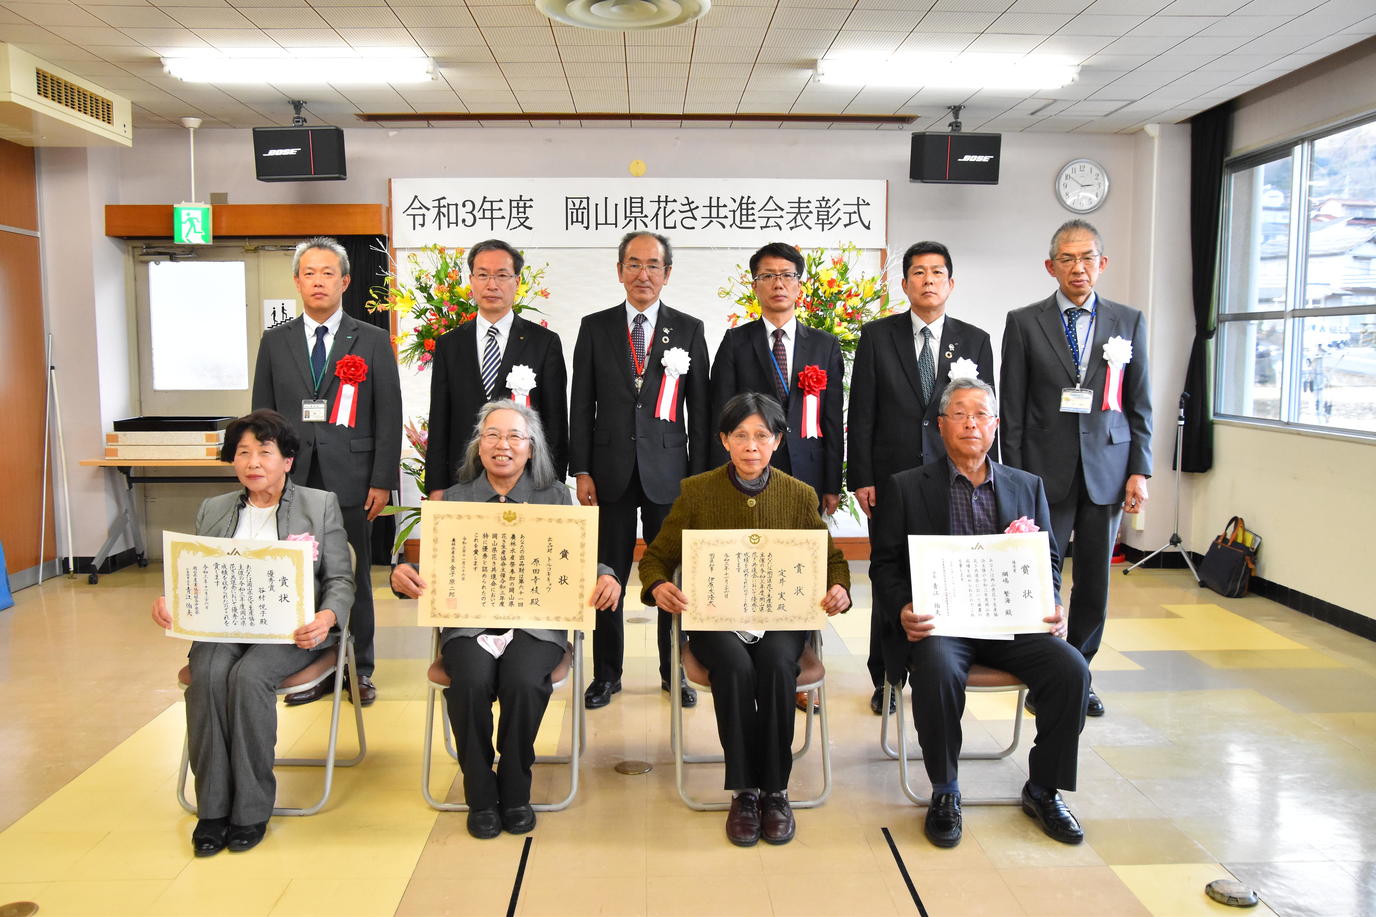 記念写真　前列受賞者（左から、谷村悦子様、原田幸枝様、定井実様、綱嶋繁海様）の内容を表示